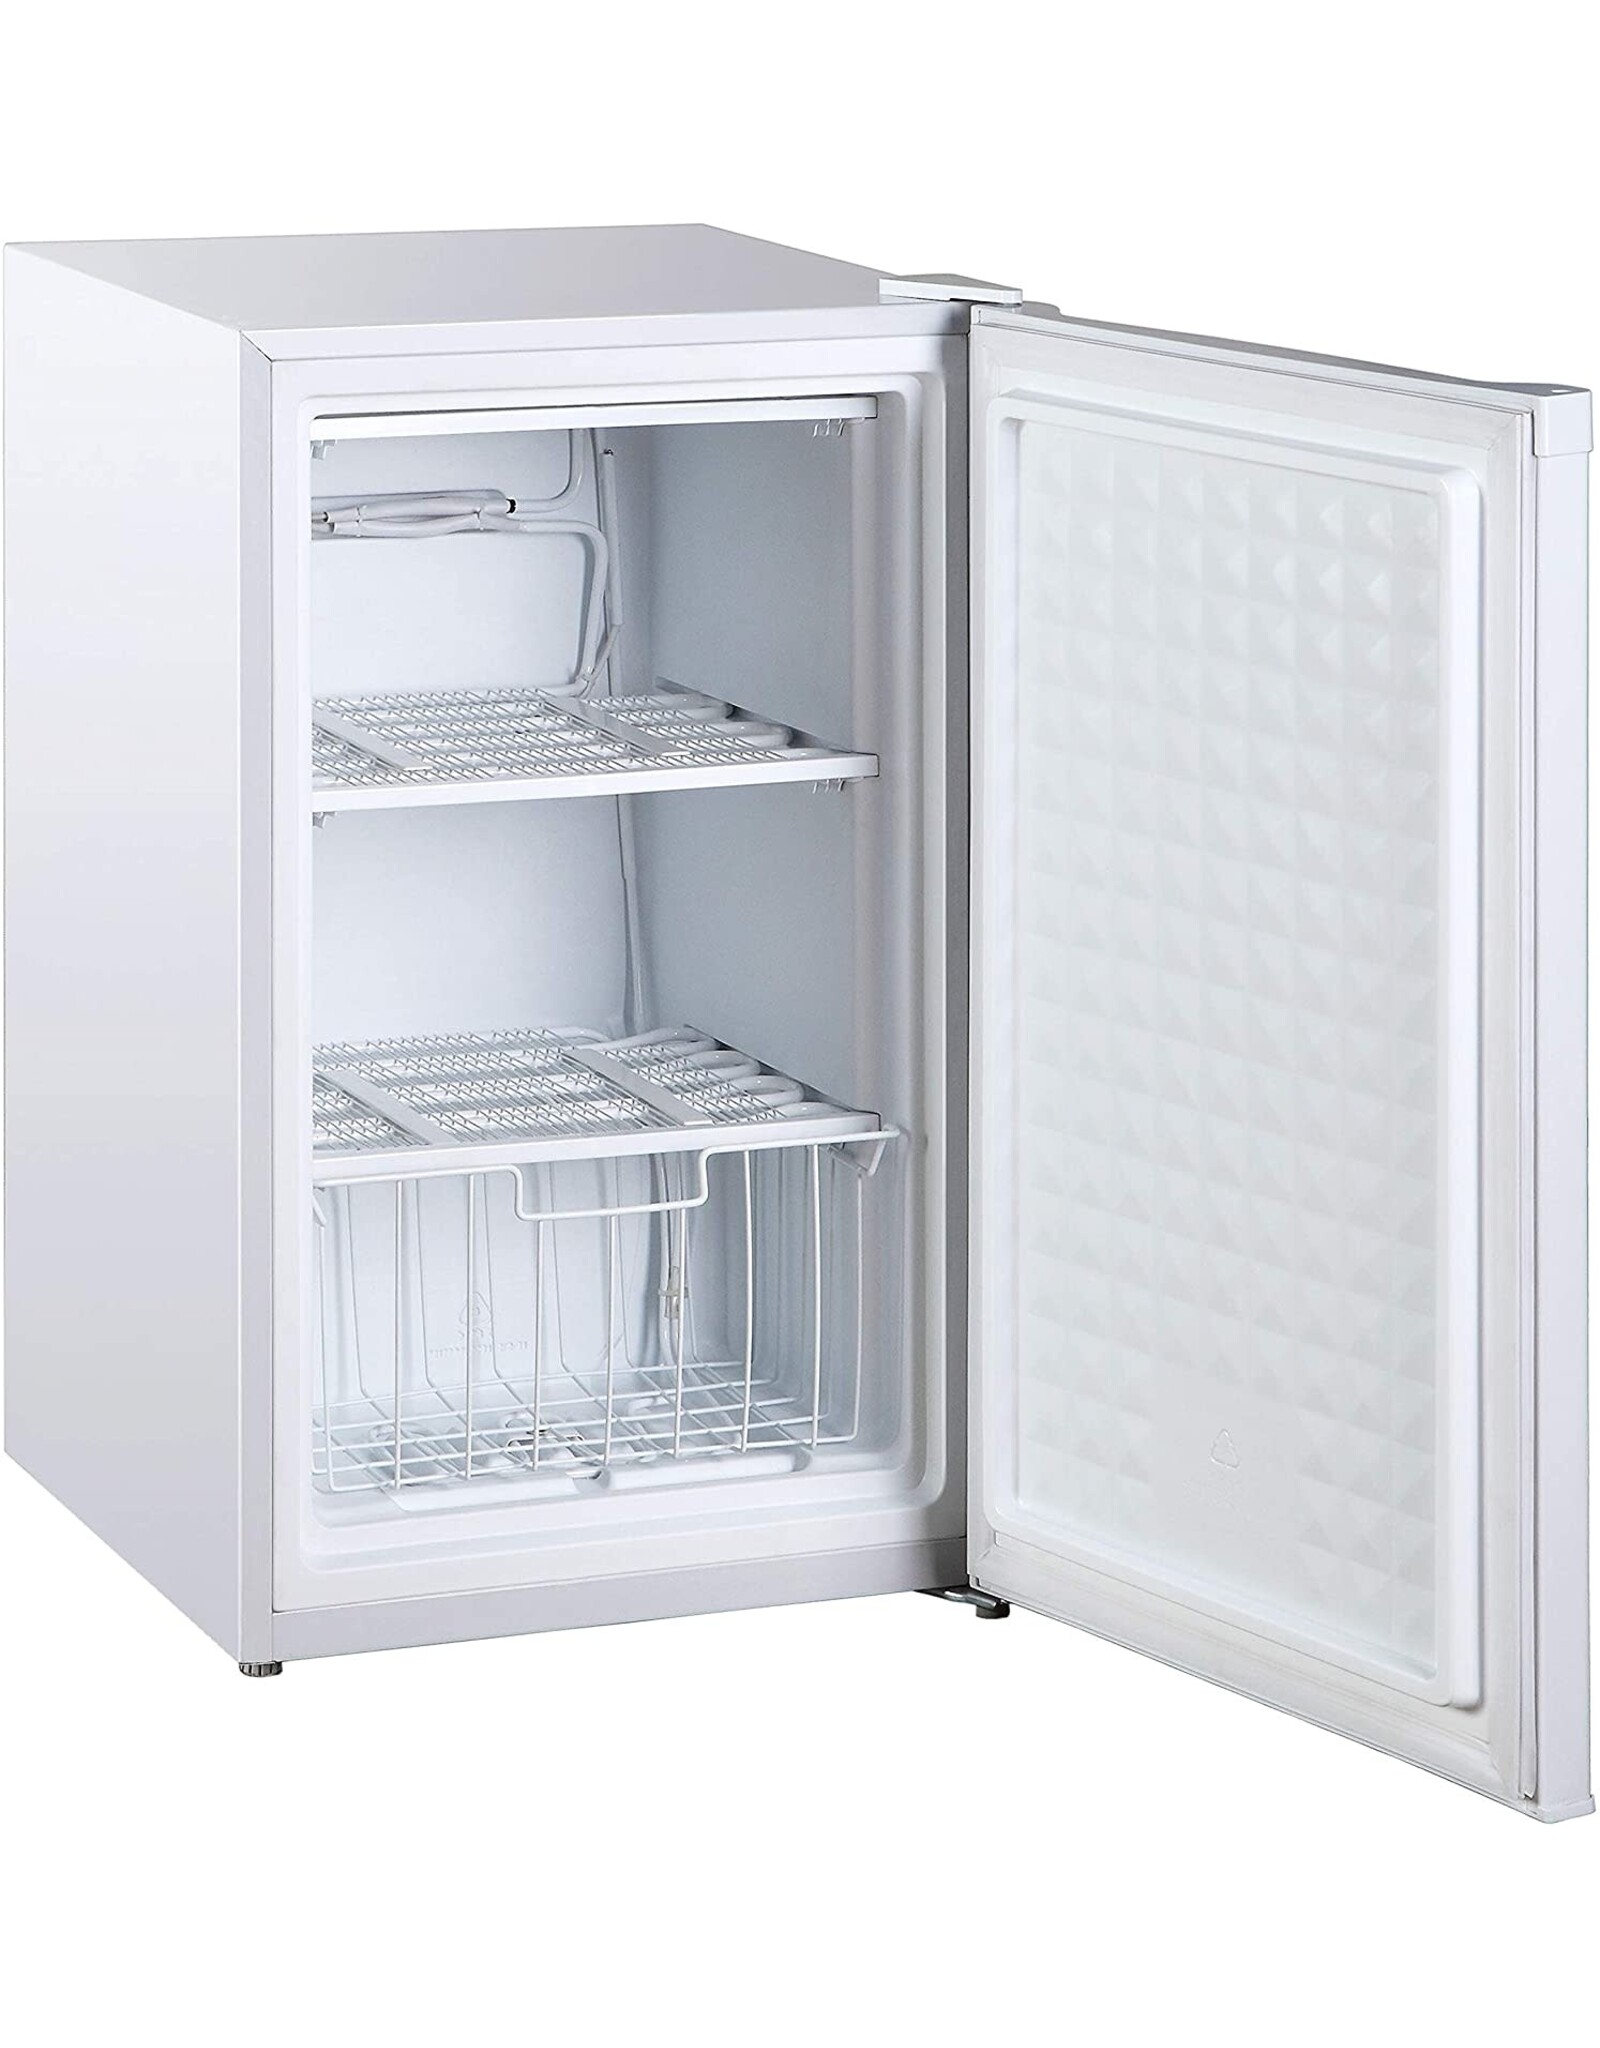 Компактный помощник по охлаждению: морозильный ларь Midea WHS-109FW1 для ограниченного пространства